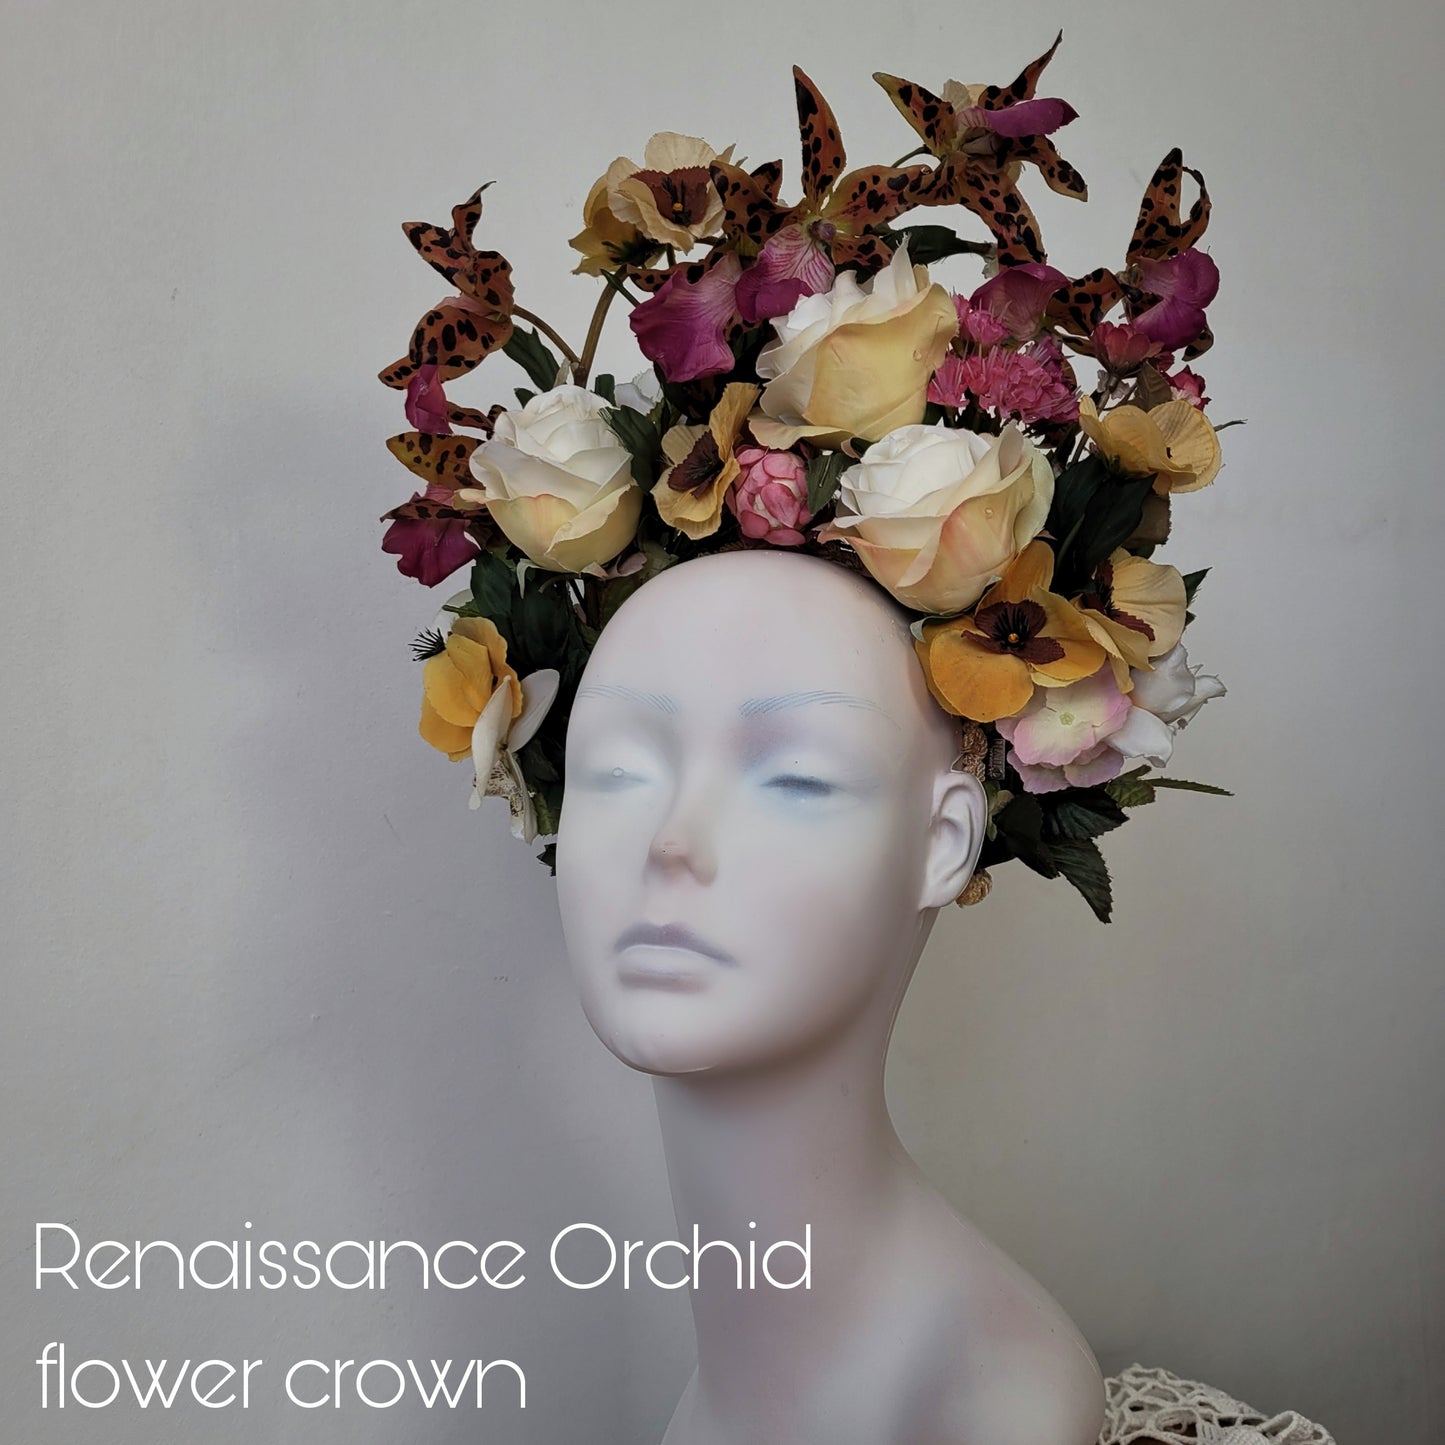 The Renaissance Orchid Flower Crown